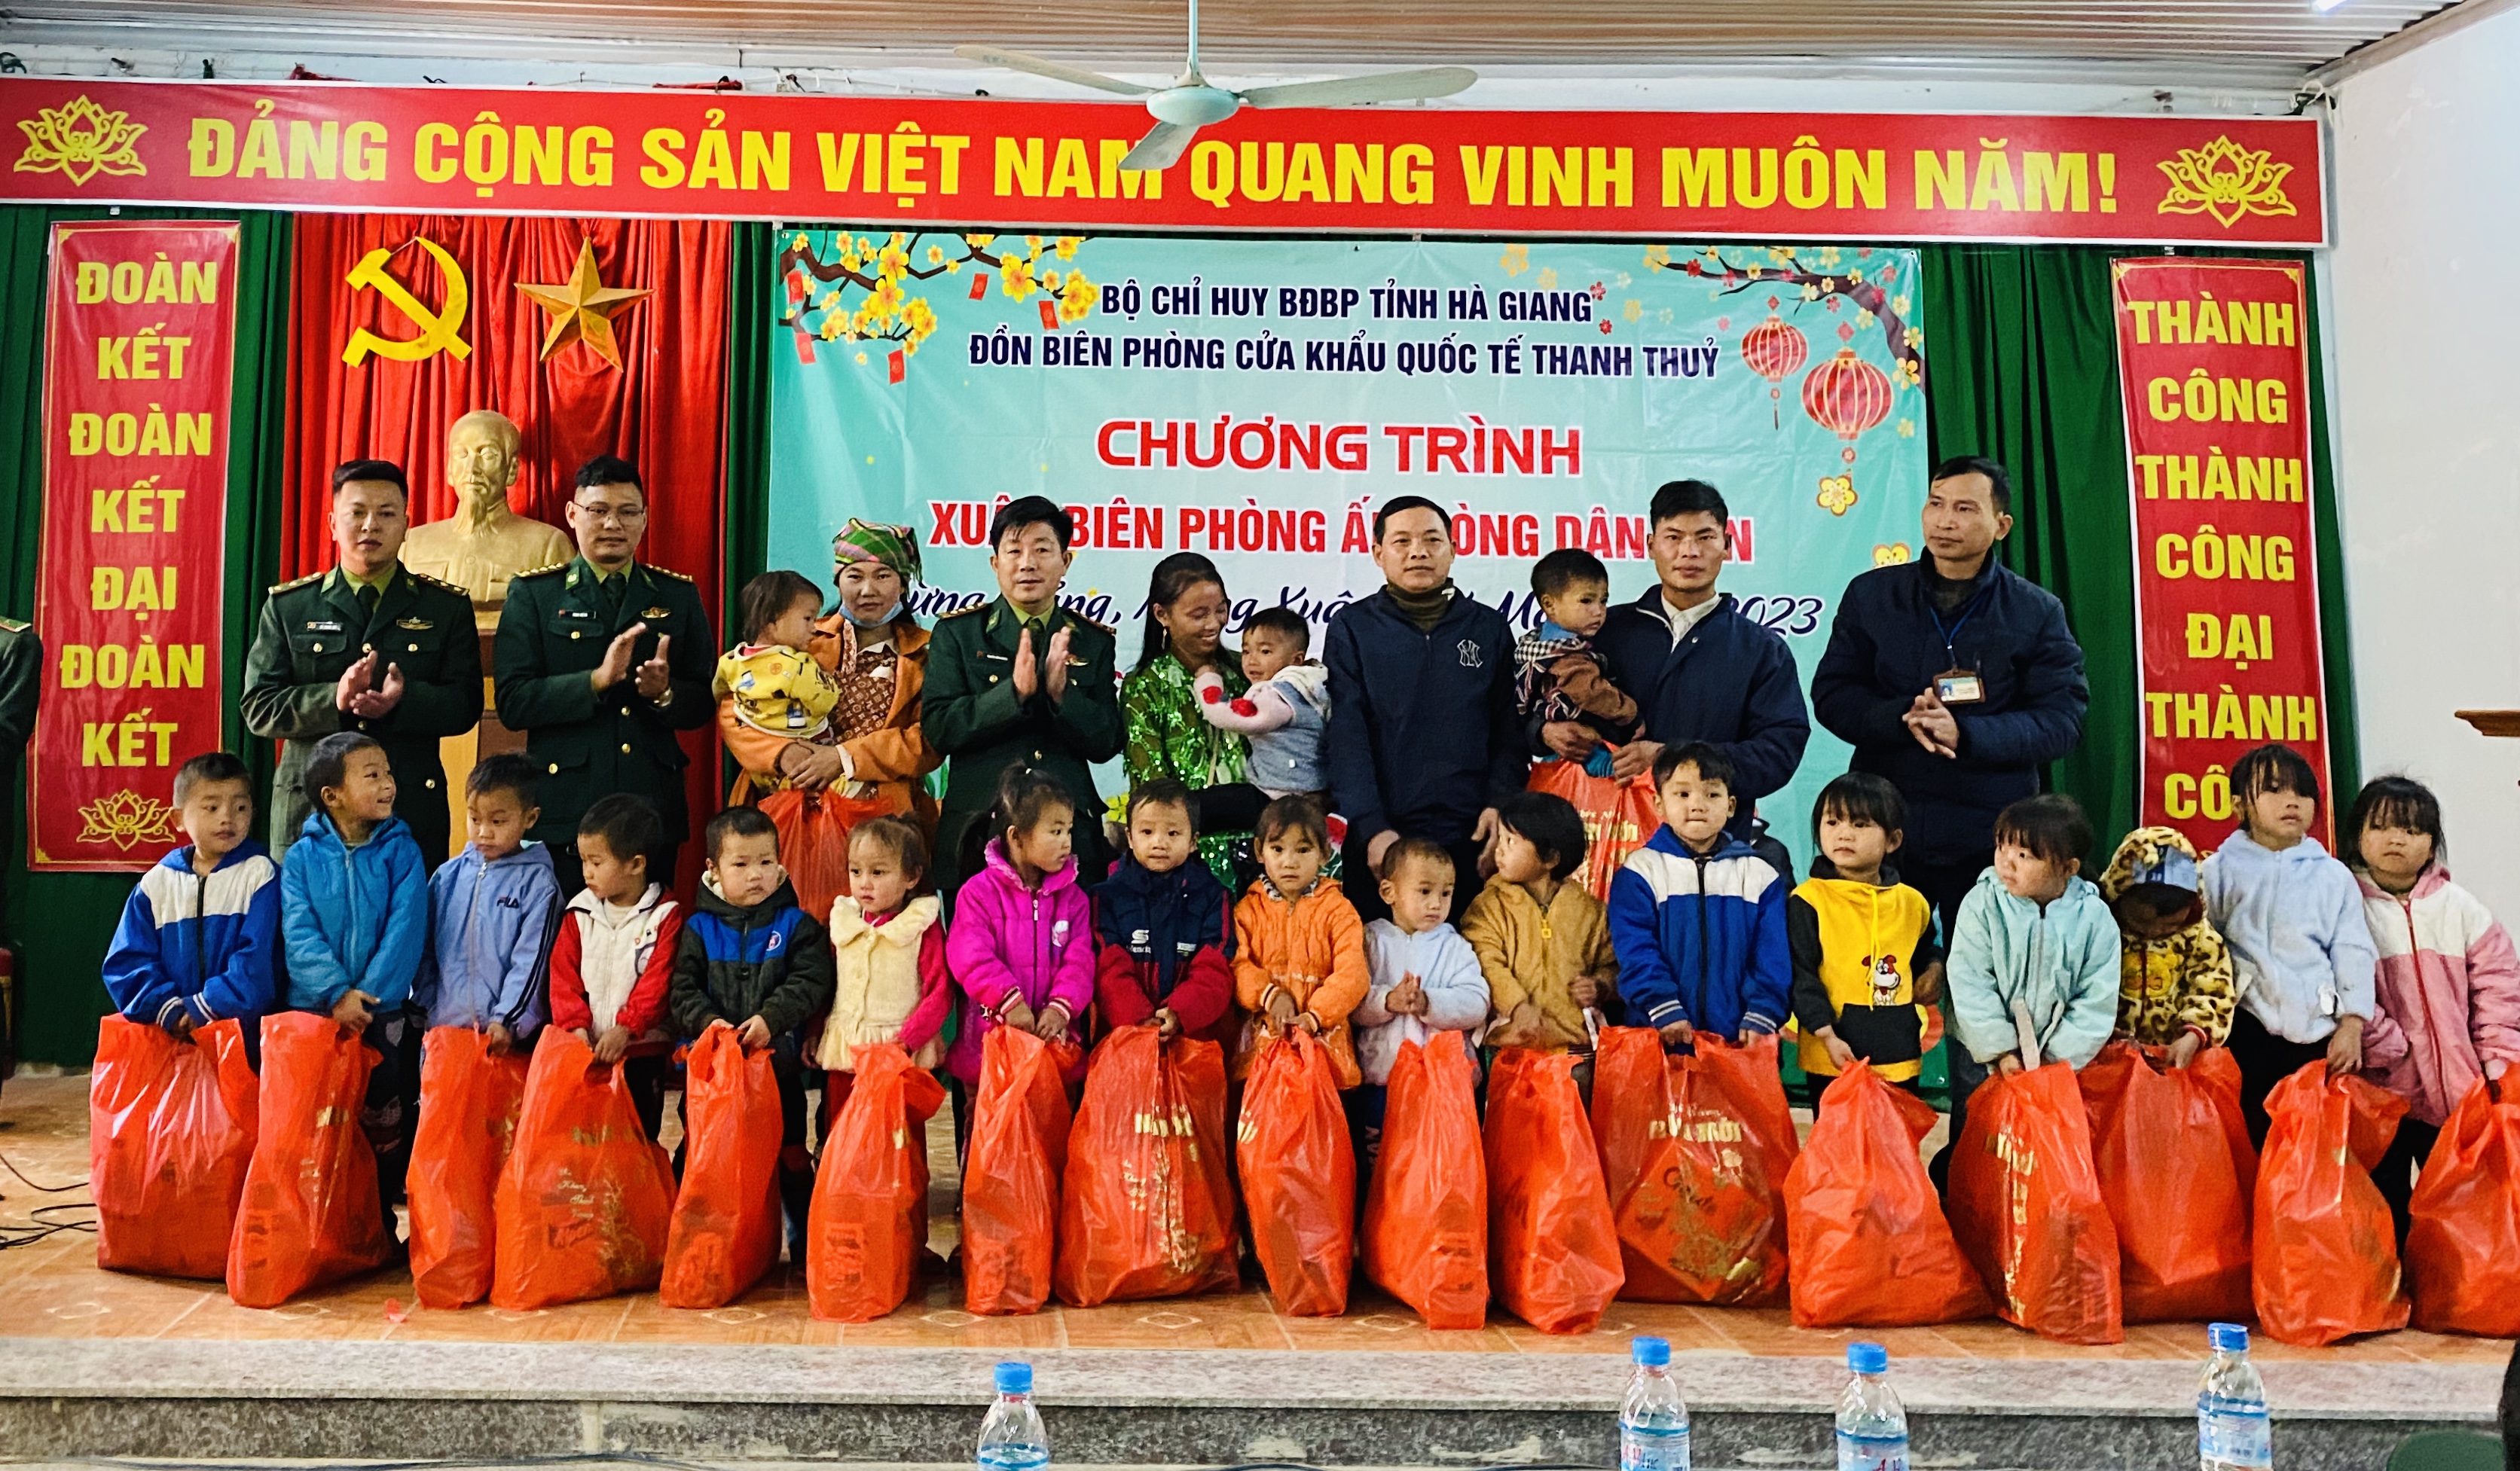 Chương trình Xuân Biên phòng ấm lòng dân bản tại xã Lao Chải, Vị Xuyên